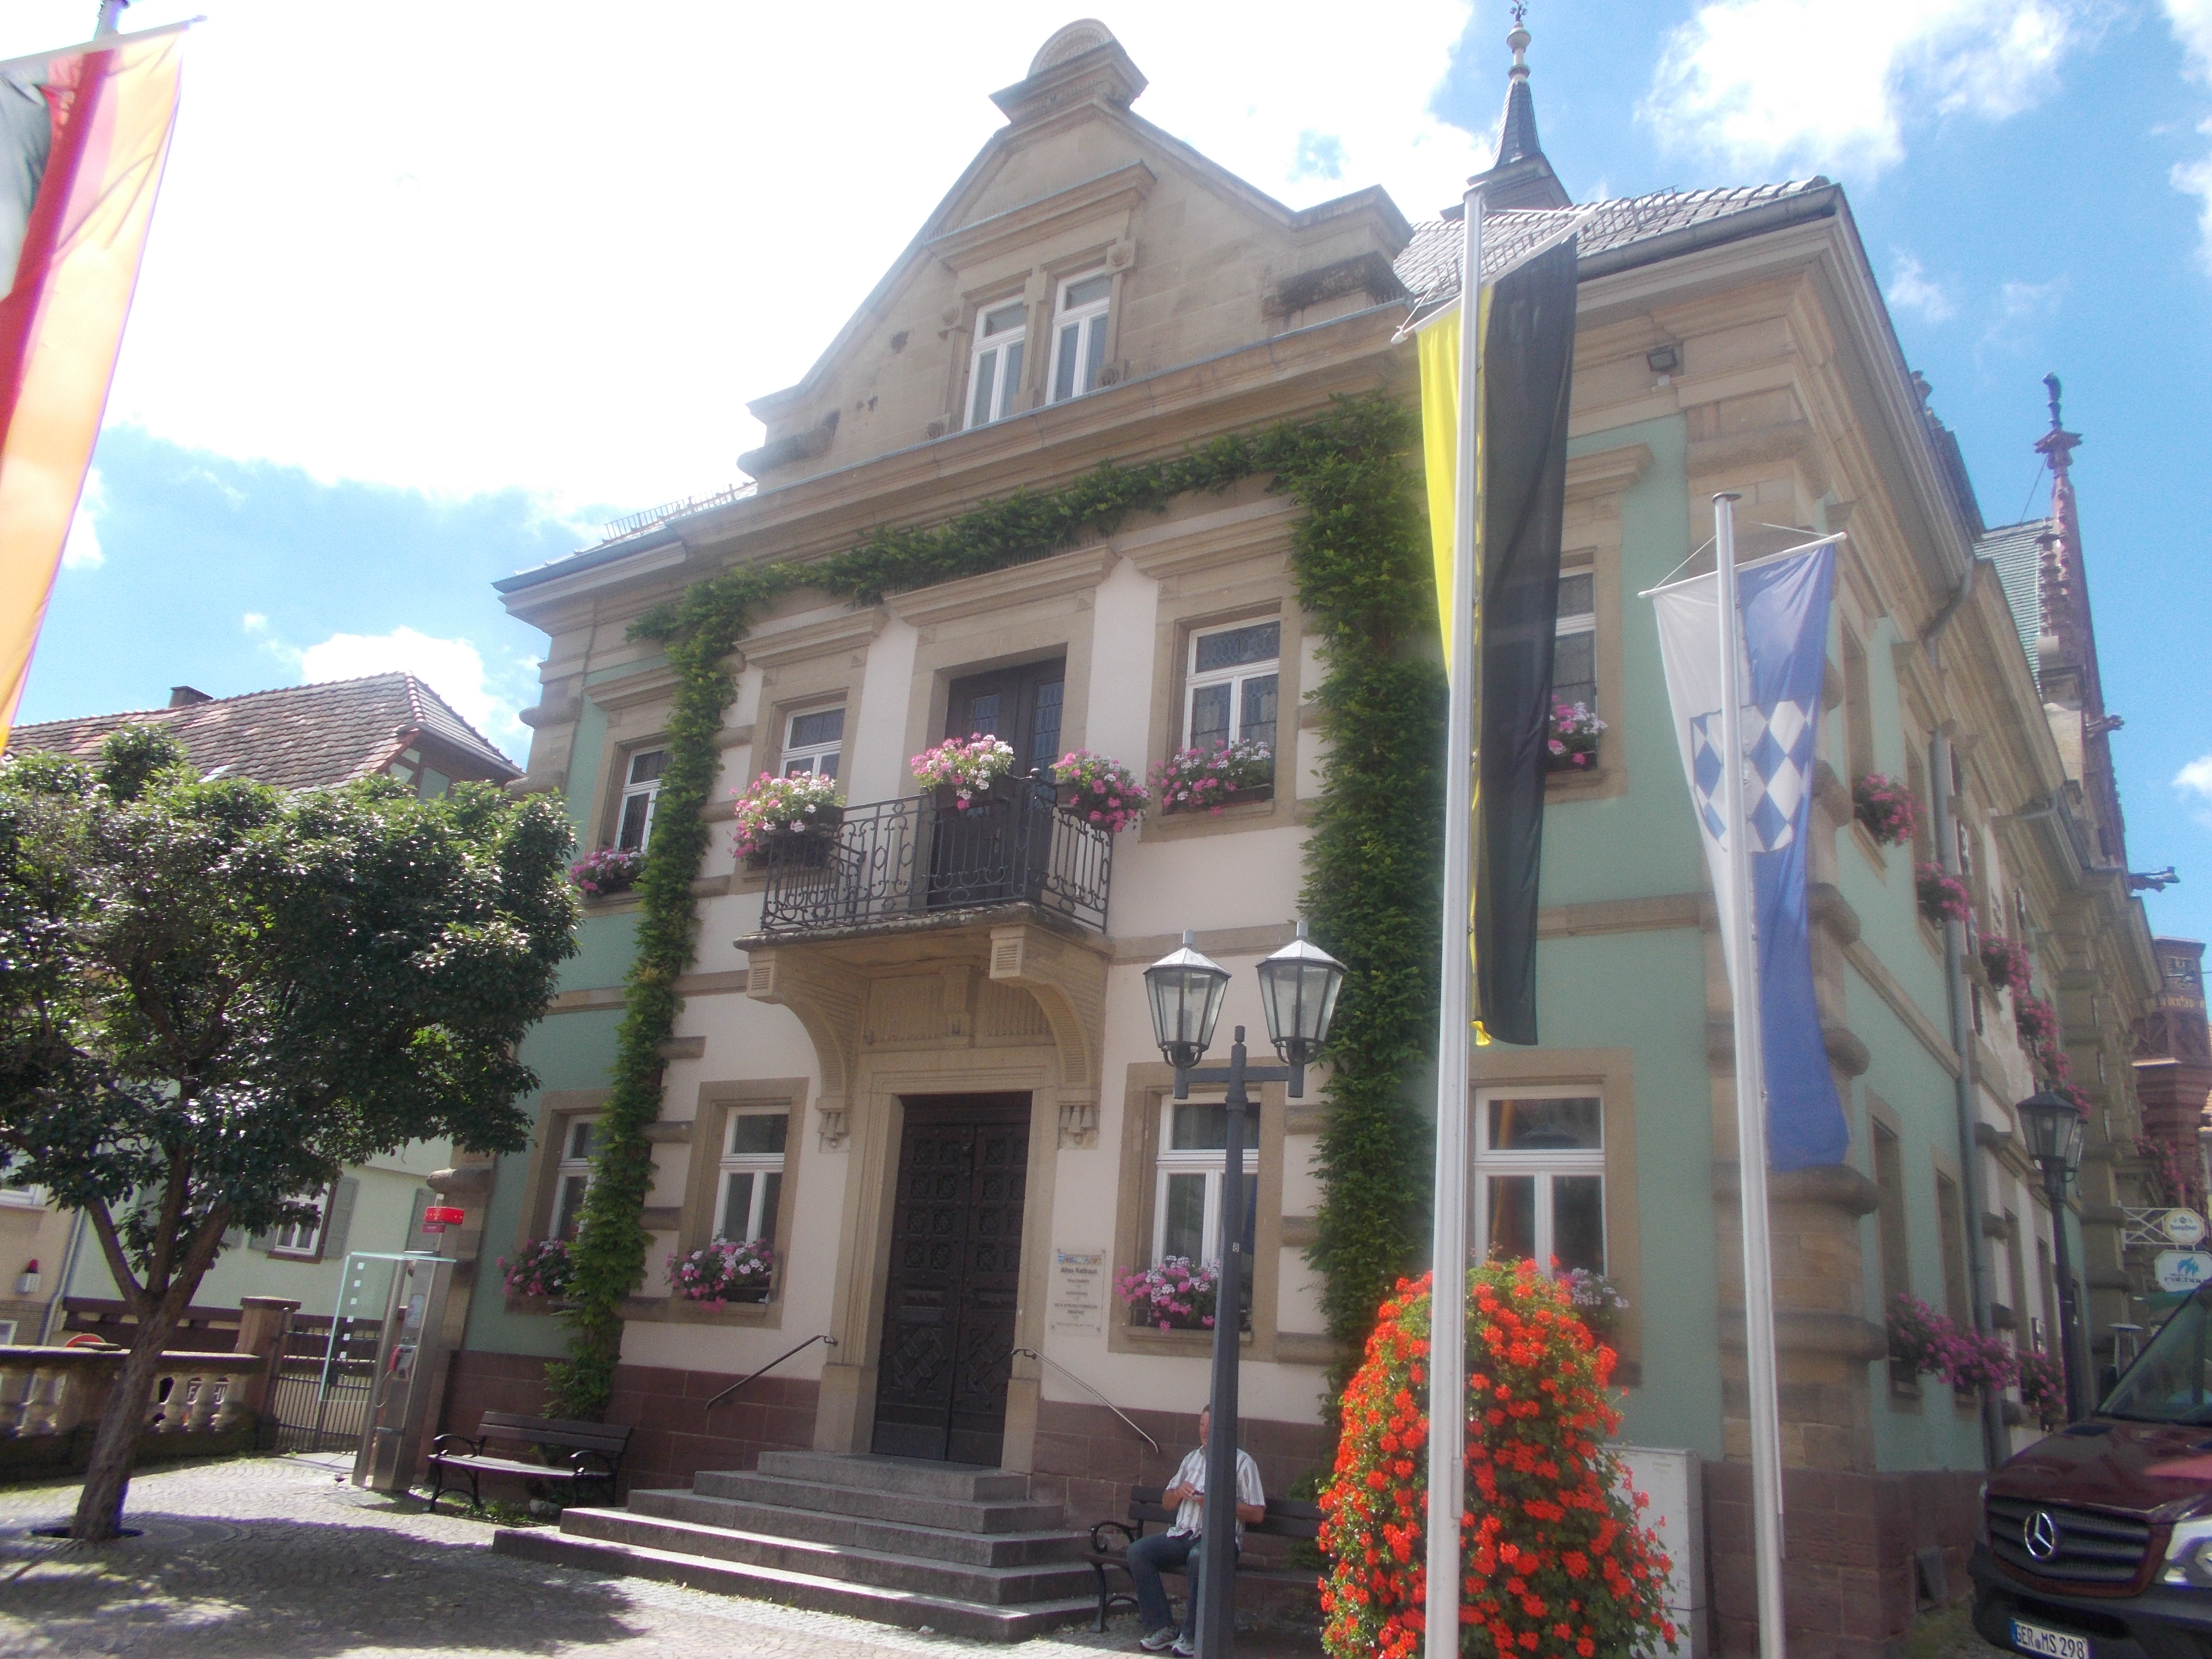 Bild 6 Altes Rathaus in Bretten